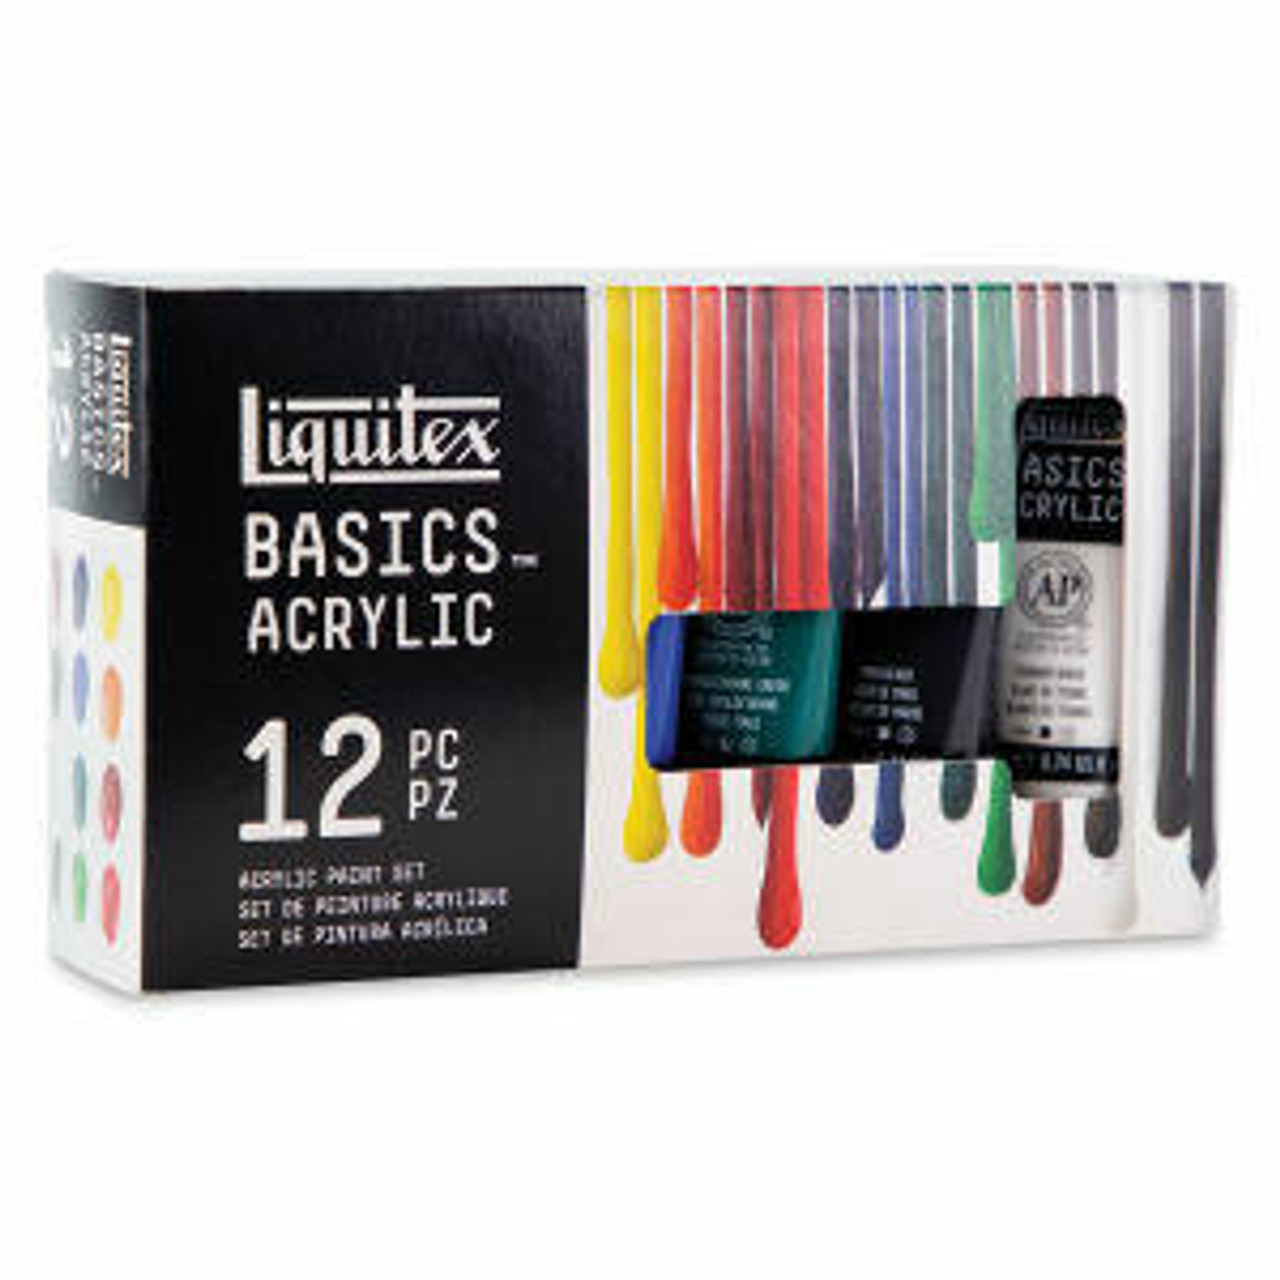 Liquitex Basics Acrylic Set - Color Mixing, Set of 8